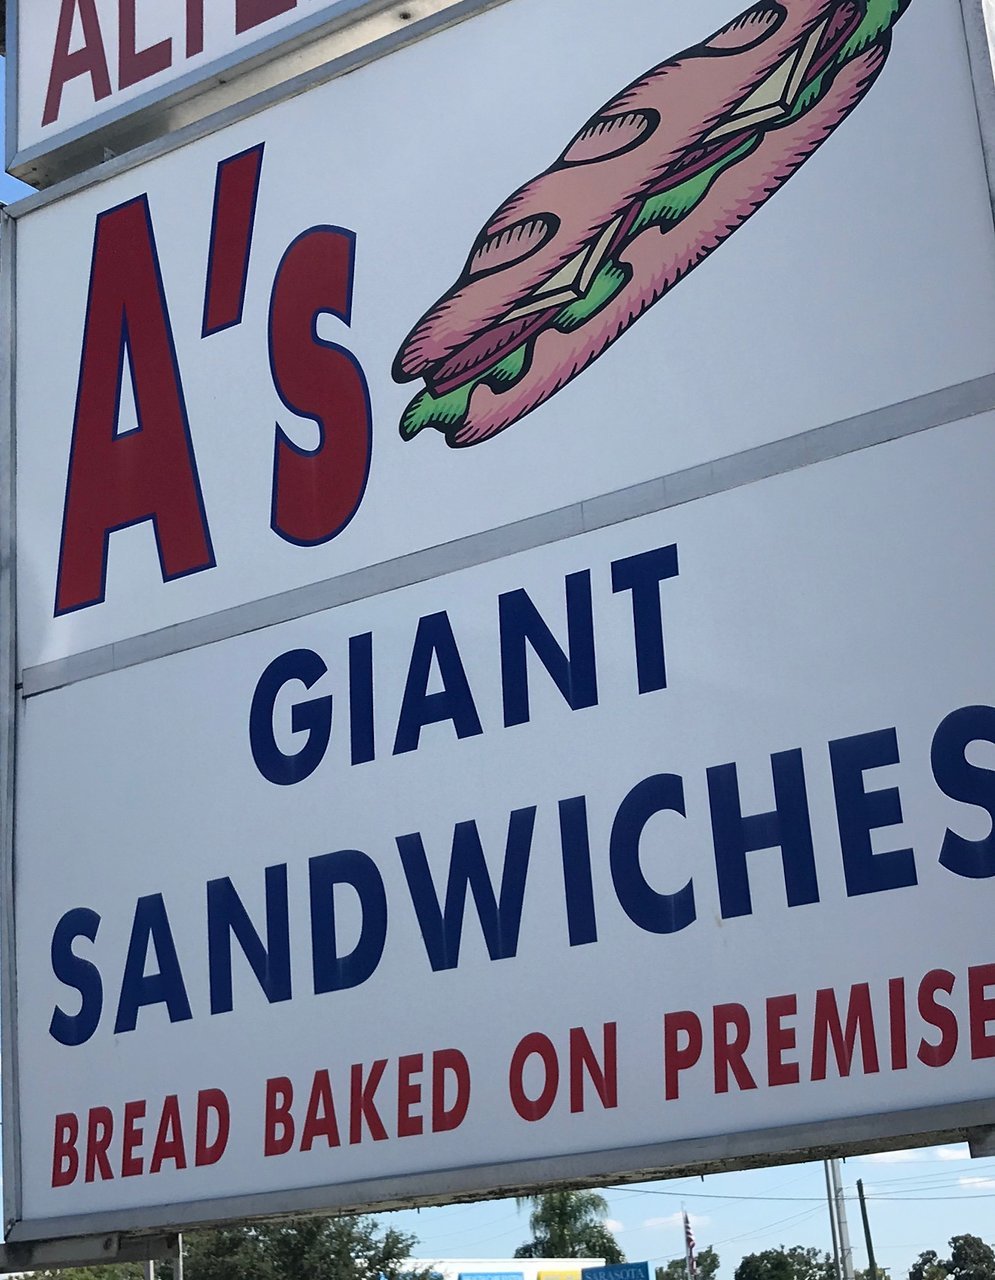 A’s Giant Sandwich